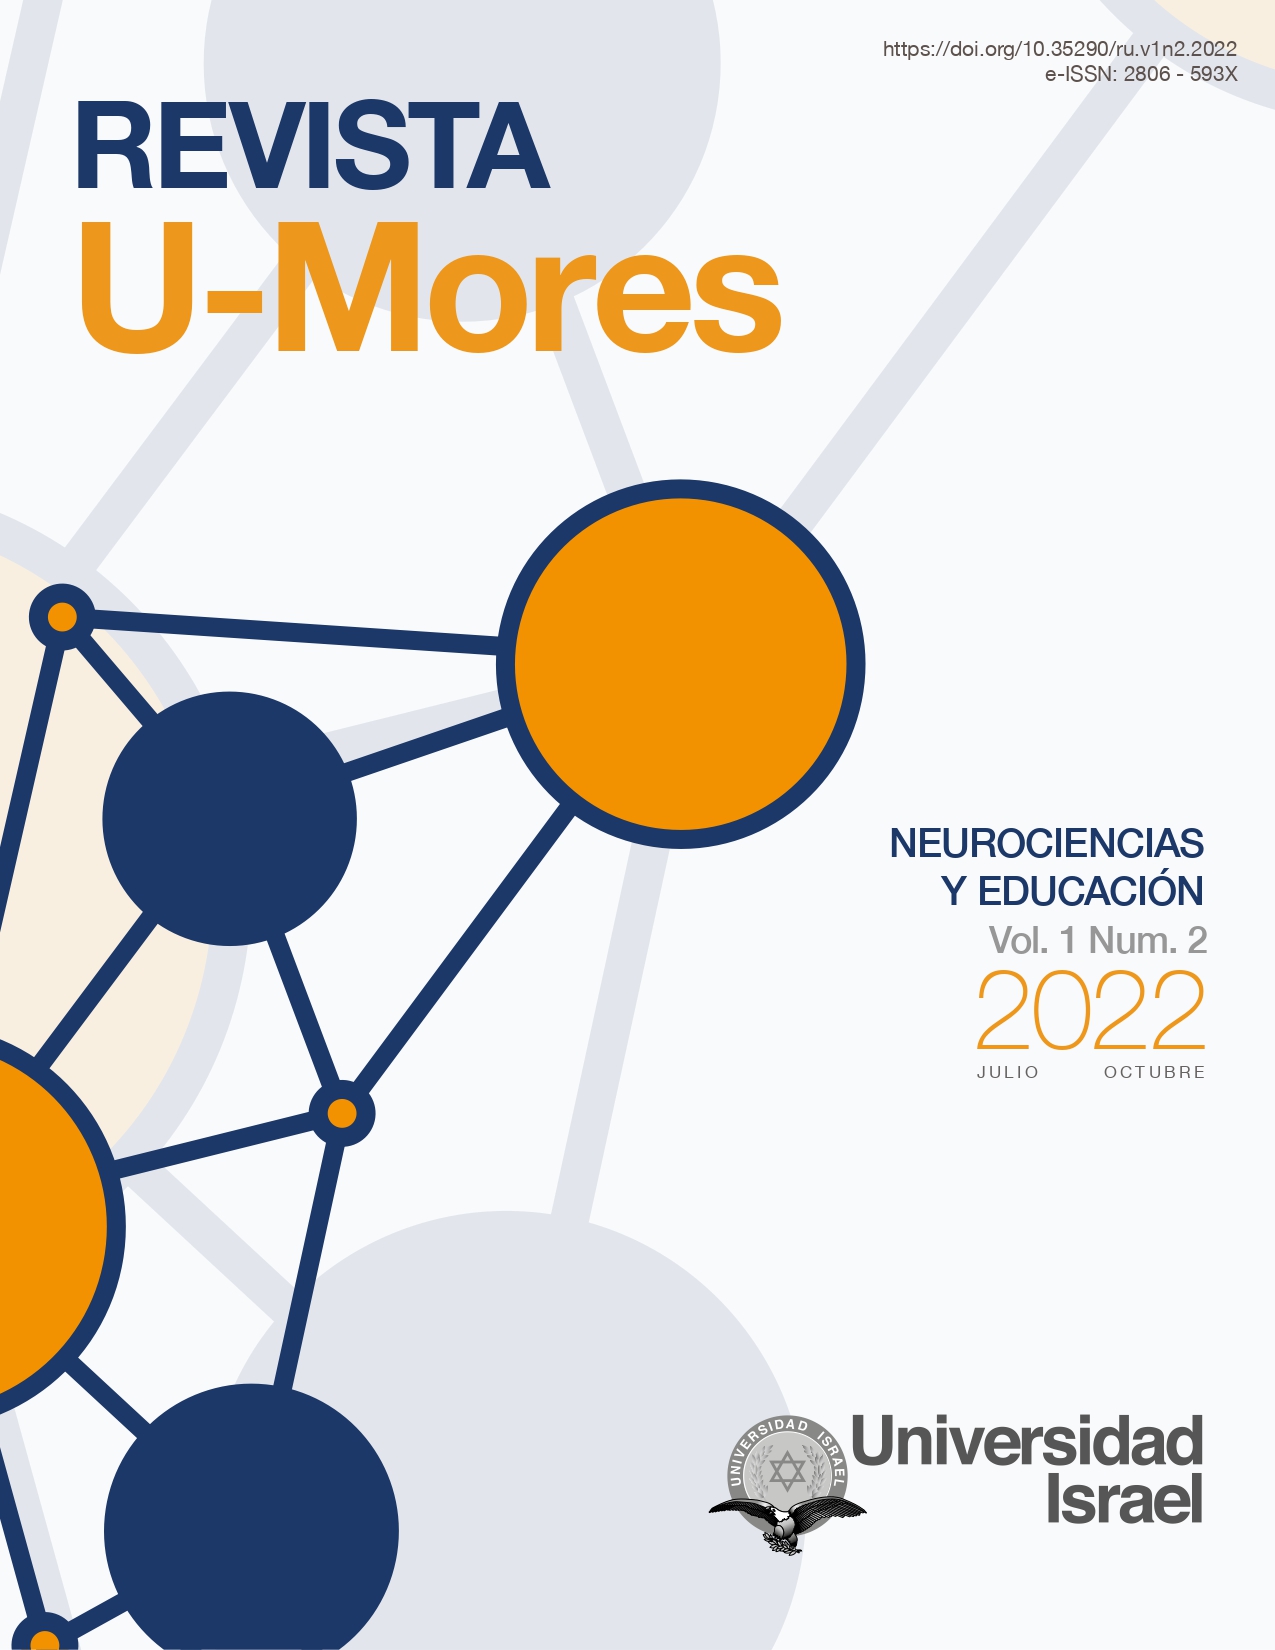 Revista U-Mores Vol. 1 Núm. 2